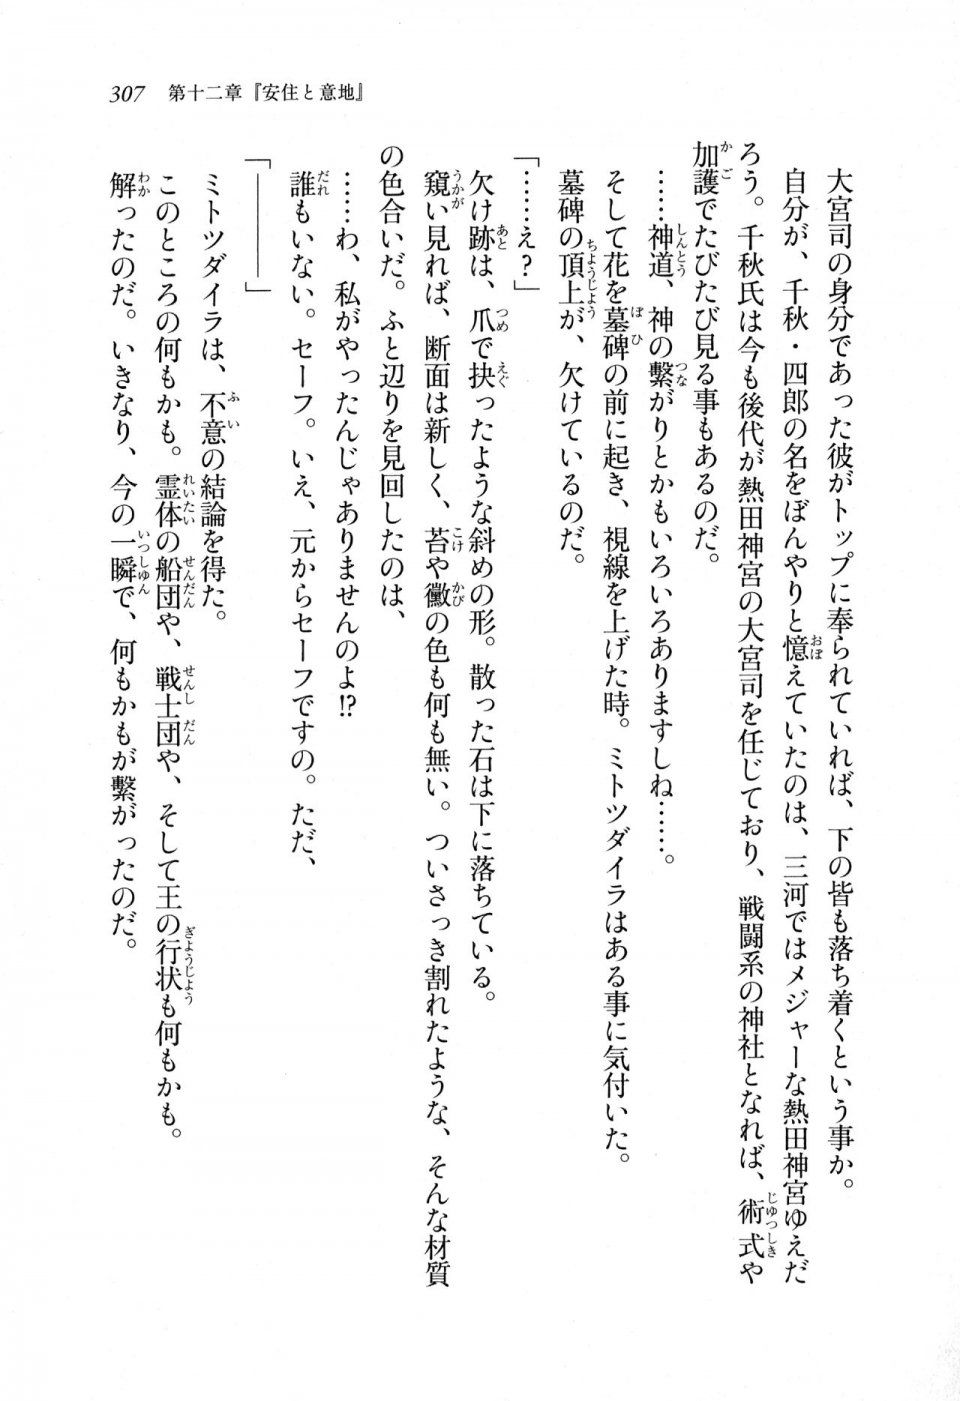 Kyoukai Senjou no Horizon LN Sidestory Vol 1 - Photo #305